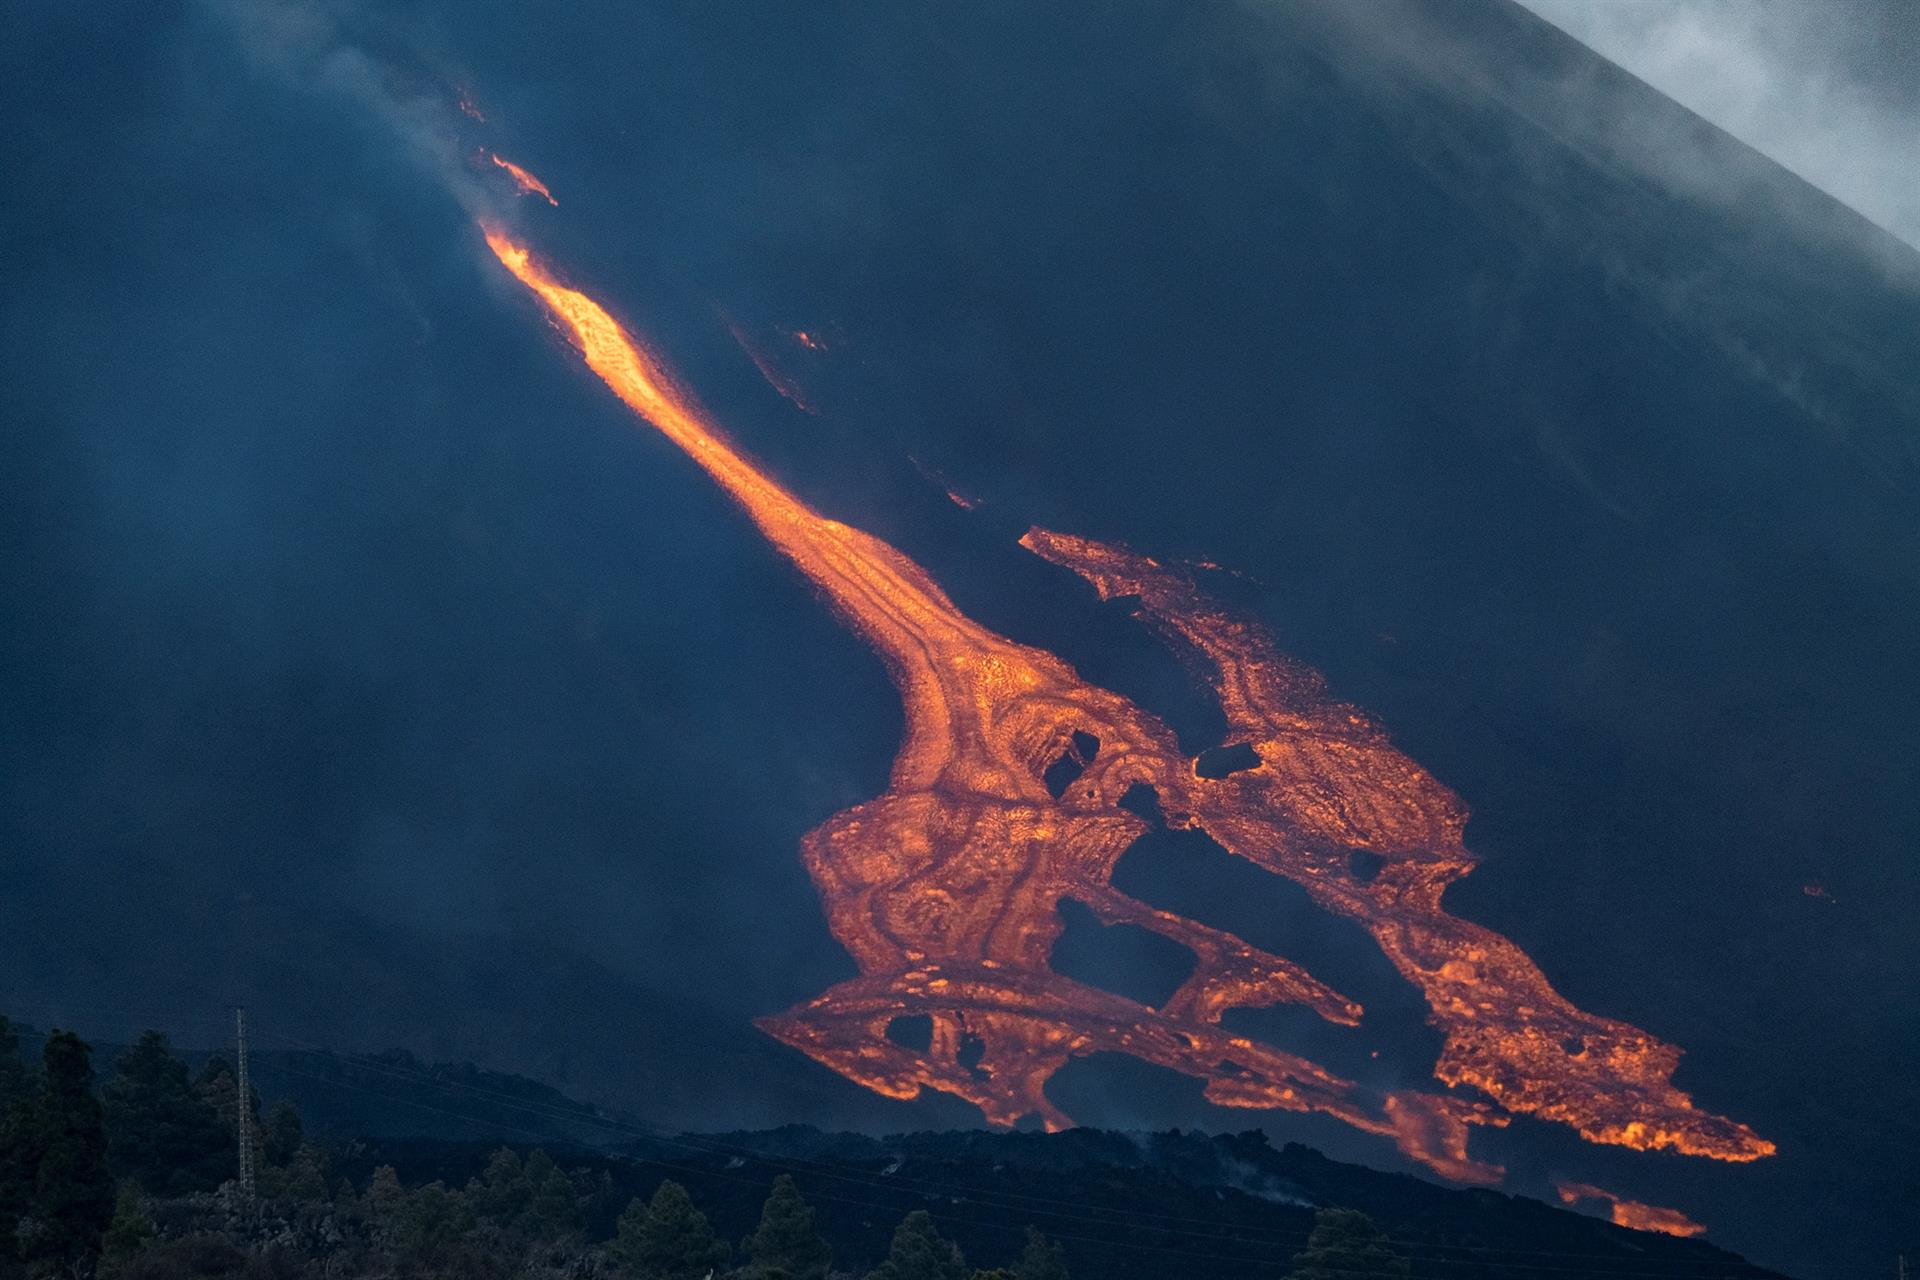 Foto de archivo de la erupción de La Palma. EFE/Ángel Medina G.